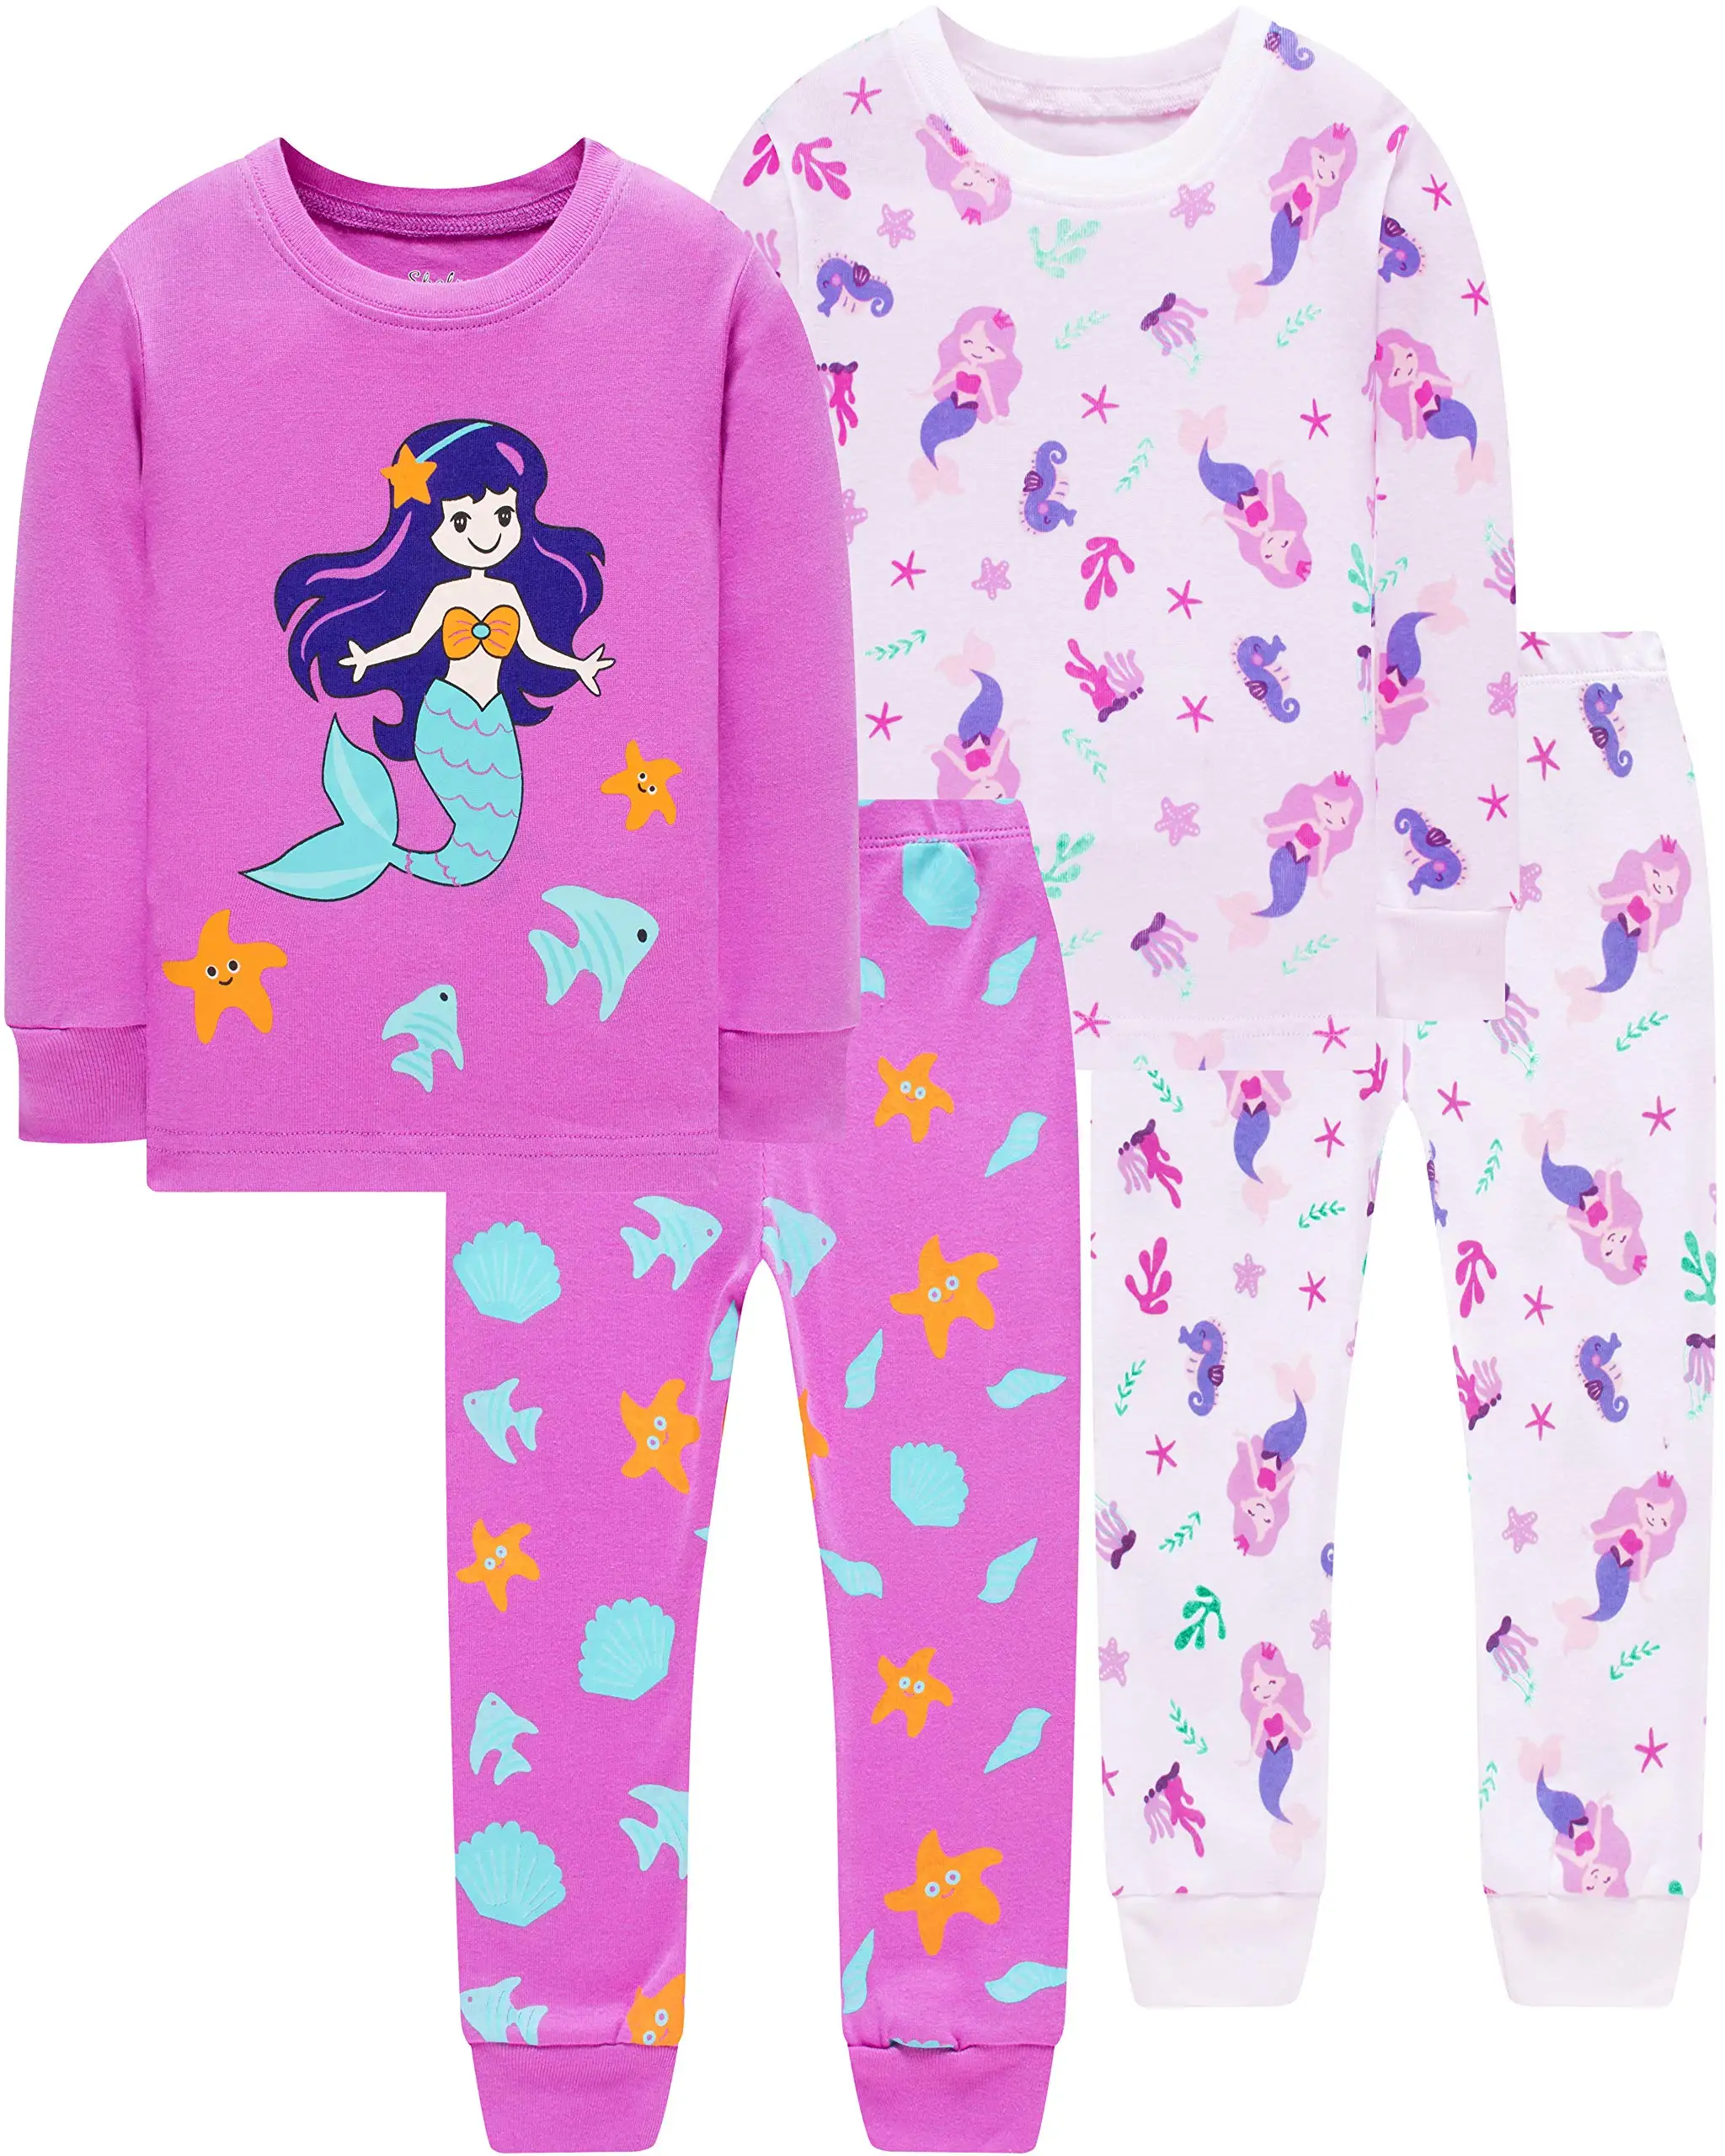 Little Girls Cat Pajamas Set Children Cotton Clothes Christmas PJs 